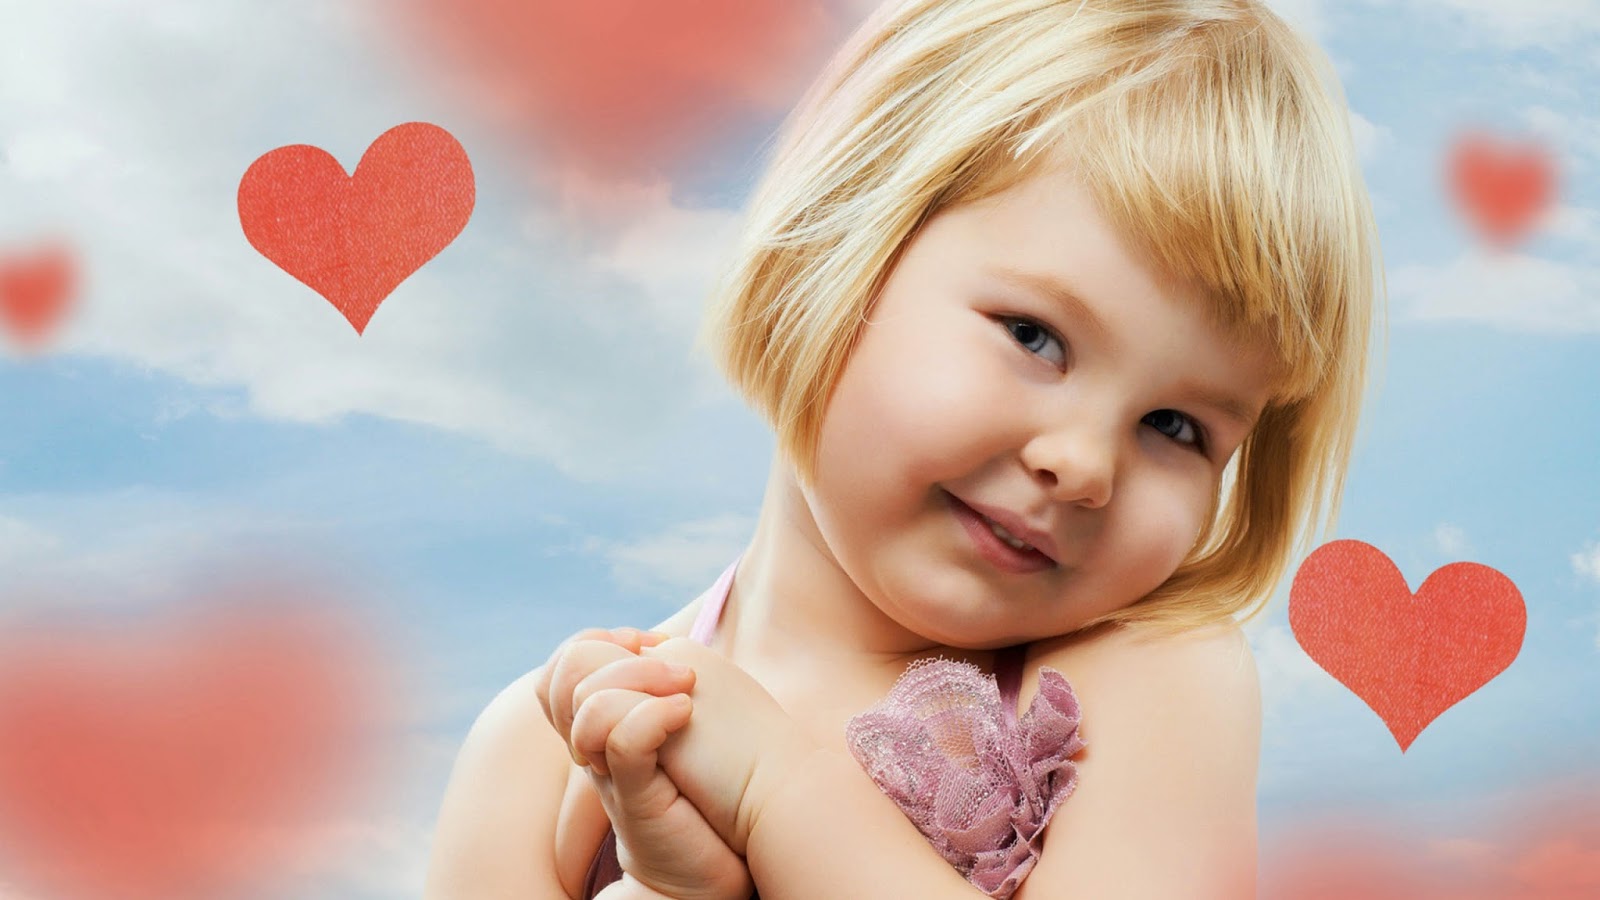 cute kids wallpaper,child,heart,pink,valentine's day,love